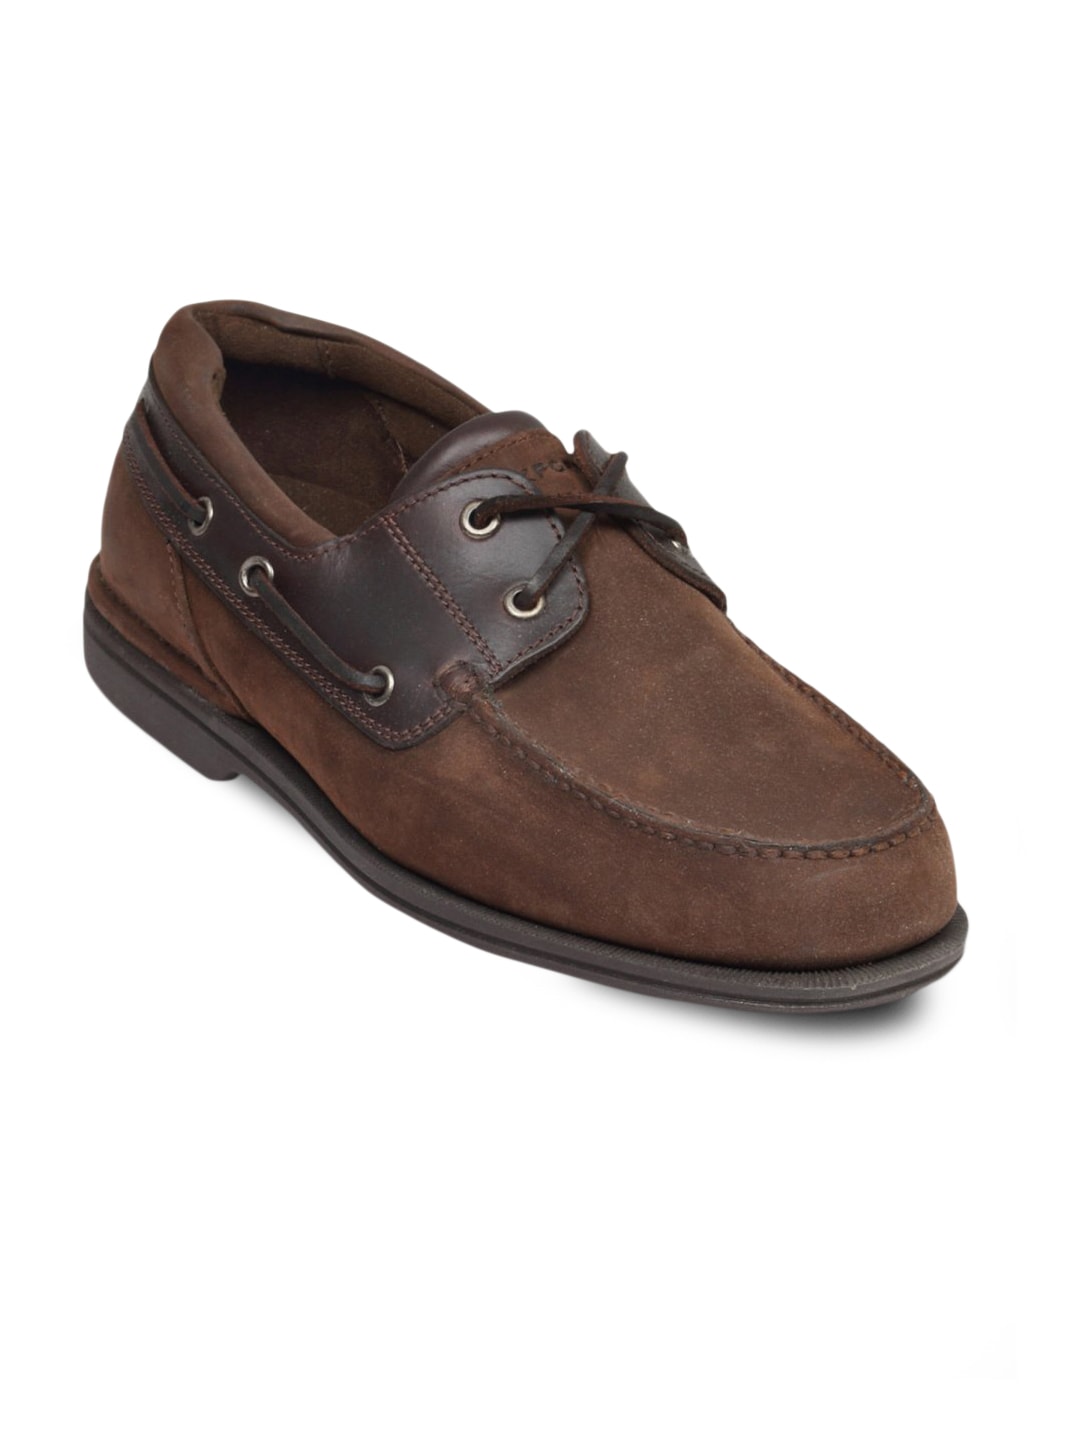 Rockport Men's Ocean Grove 2 Brown Shoe